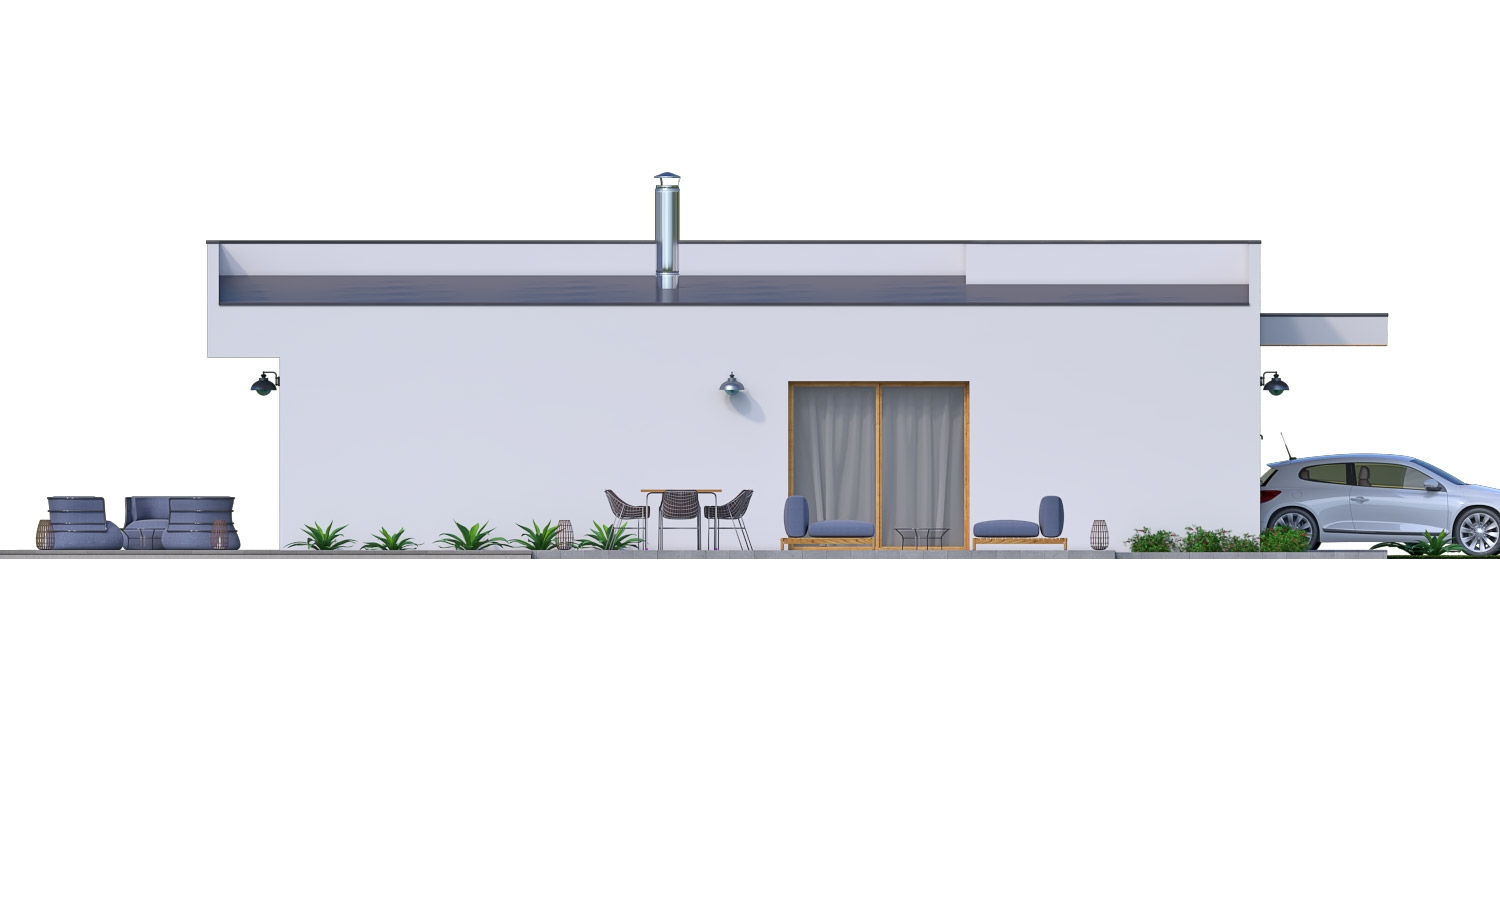 Zrkadlový pohľad 3. - Moderní 4-pokojový zděný rodinný dům s plochou střechou. Možnost realizace s valbovou nebo sedlovou střechou.